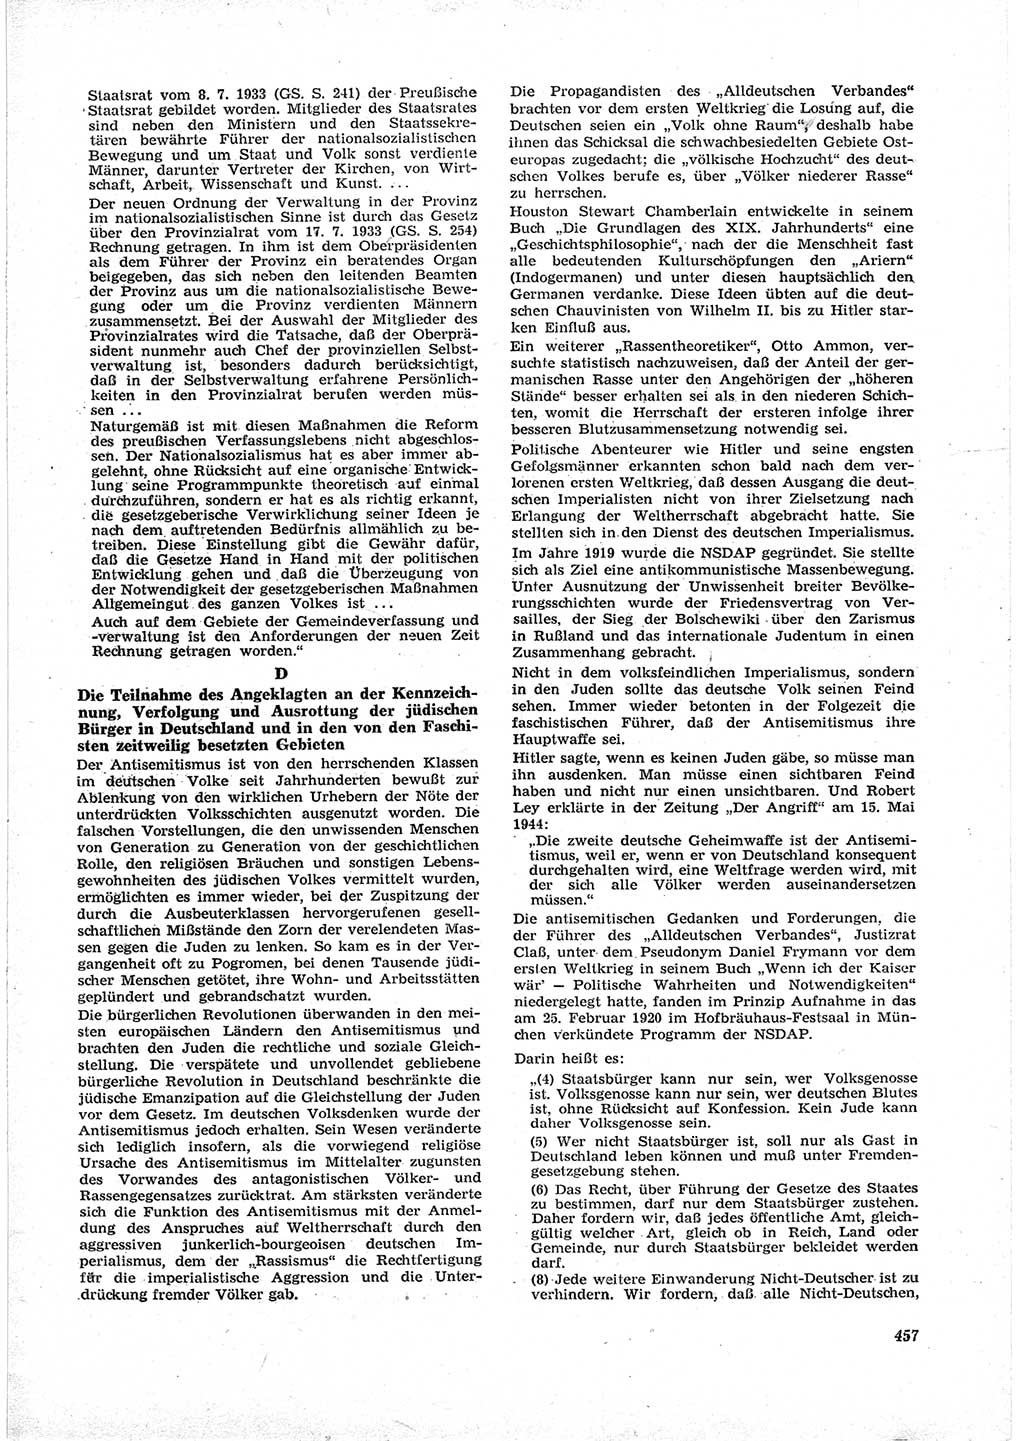 Neue Justiz (NJ), Zeitschrift für Recht und Rechtswissenschaft [Deutsche Demokratische Republik (DDR)], 17. Jahrgang 1963, Seite 457 (NJ DDR 1963, S. 457)